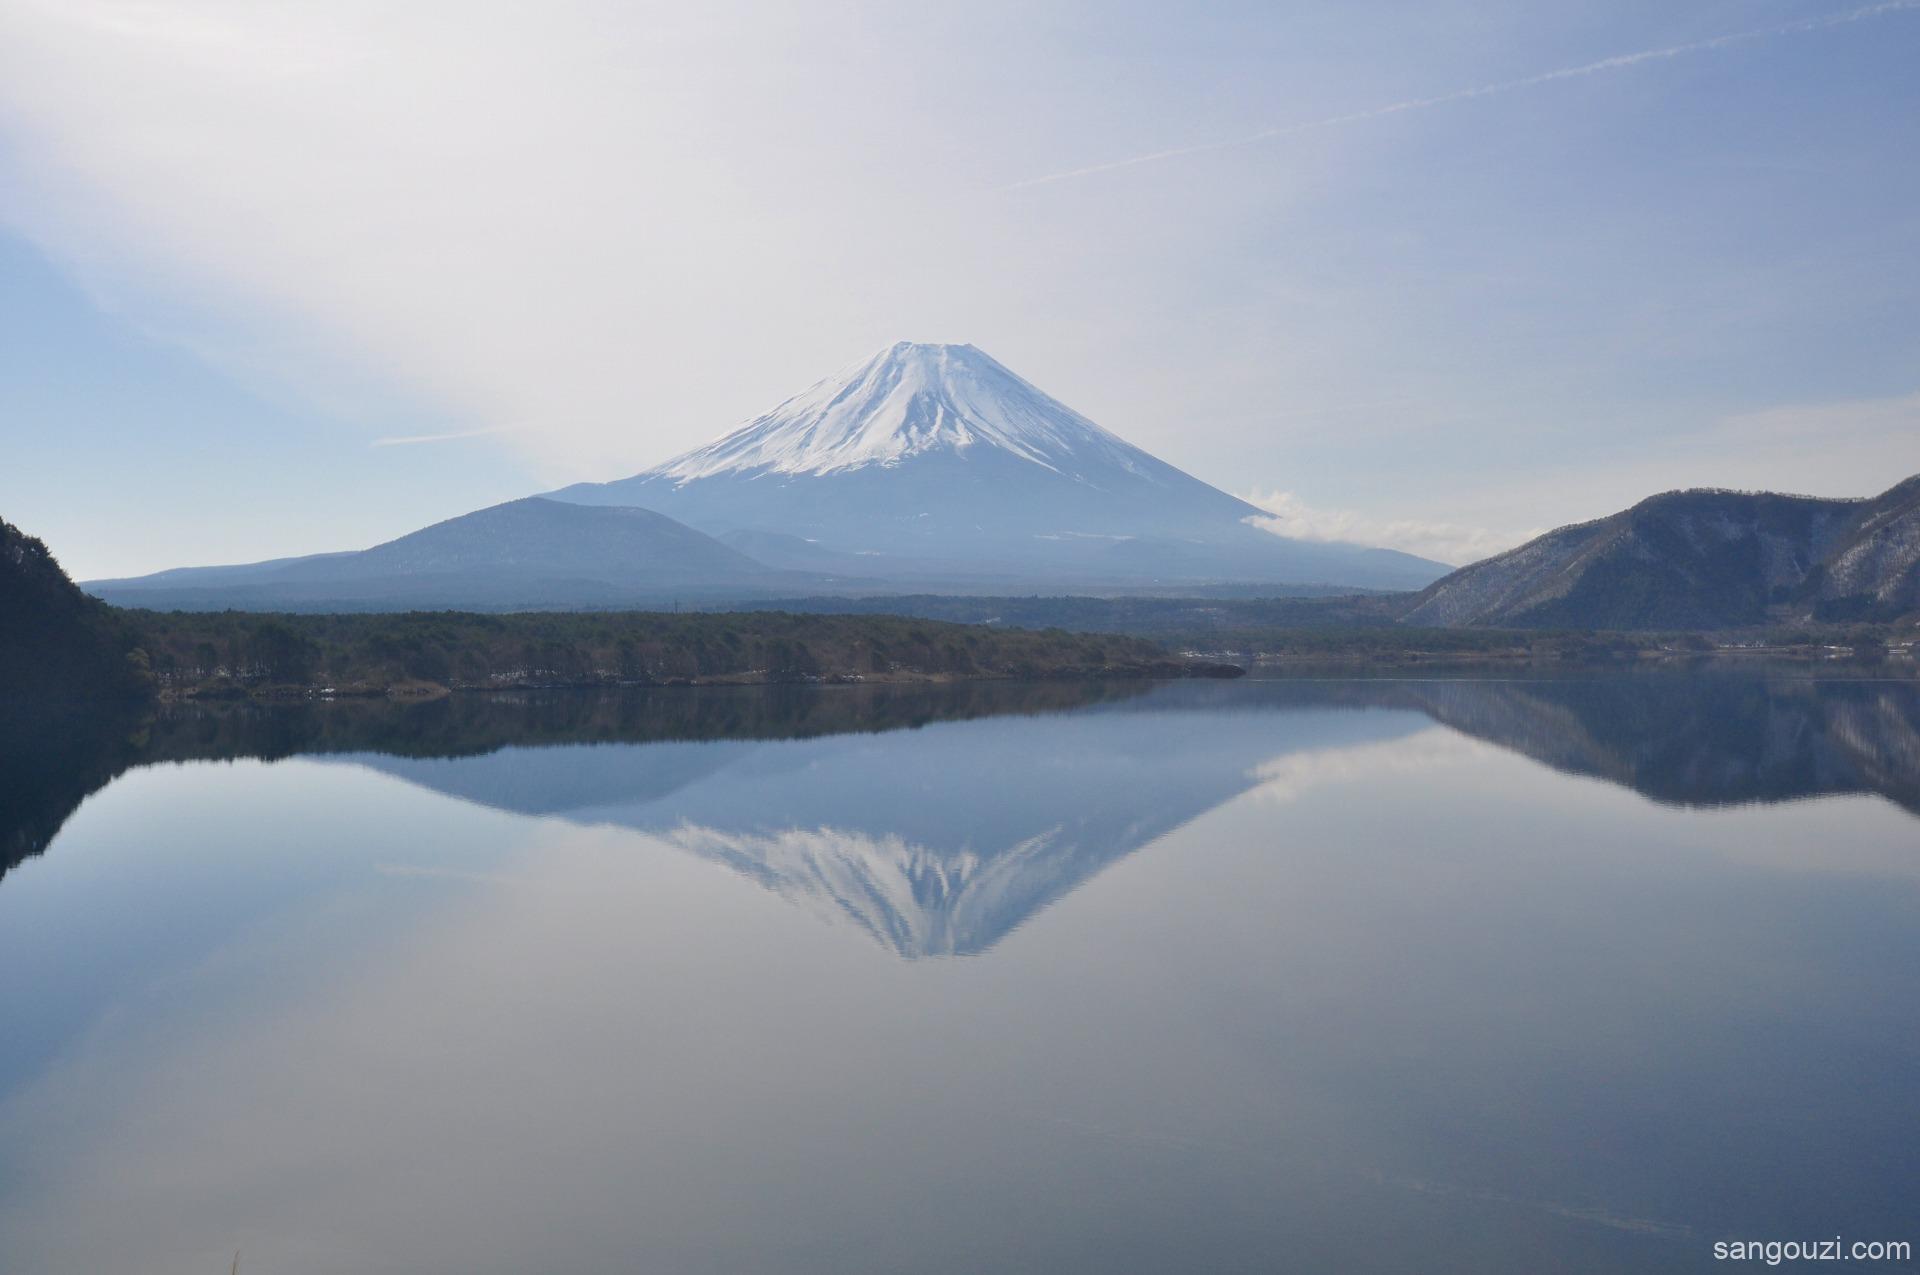 富士山是一座活火山